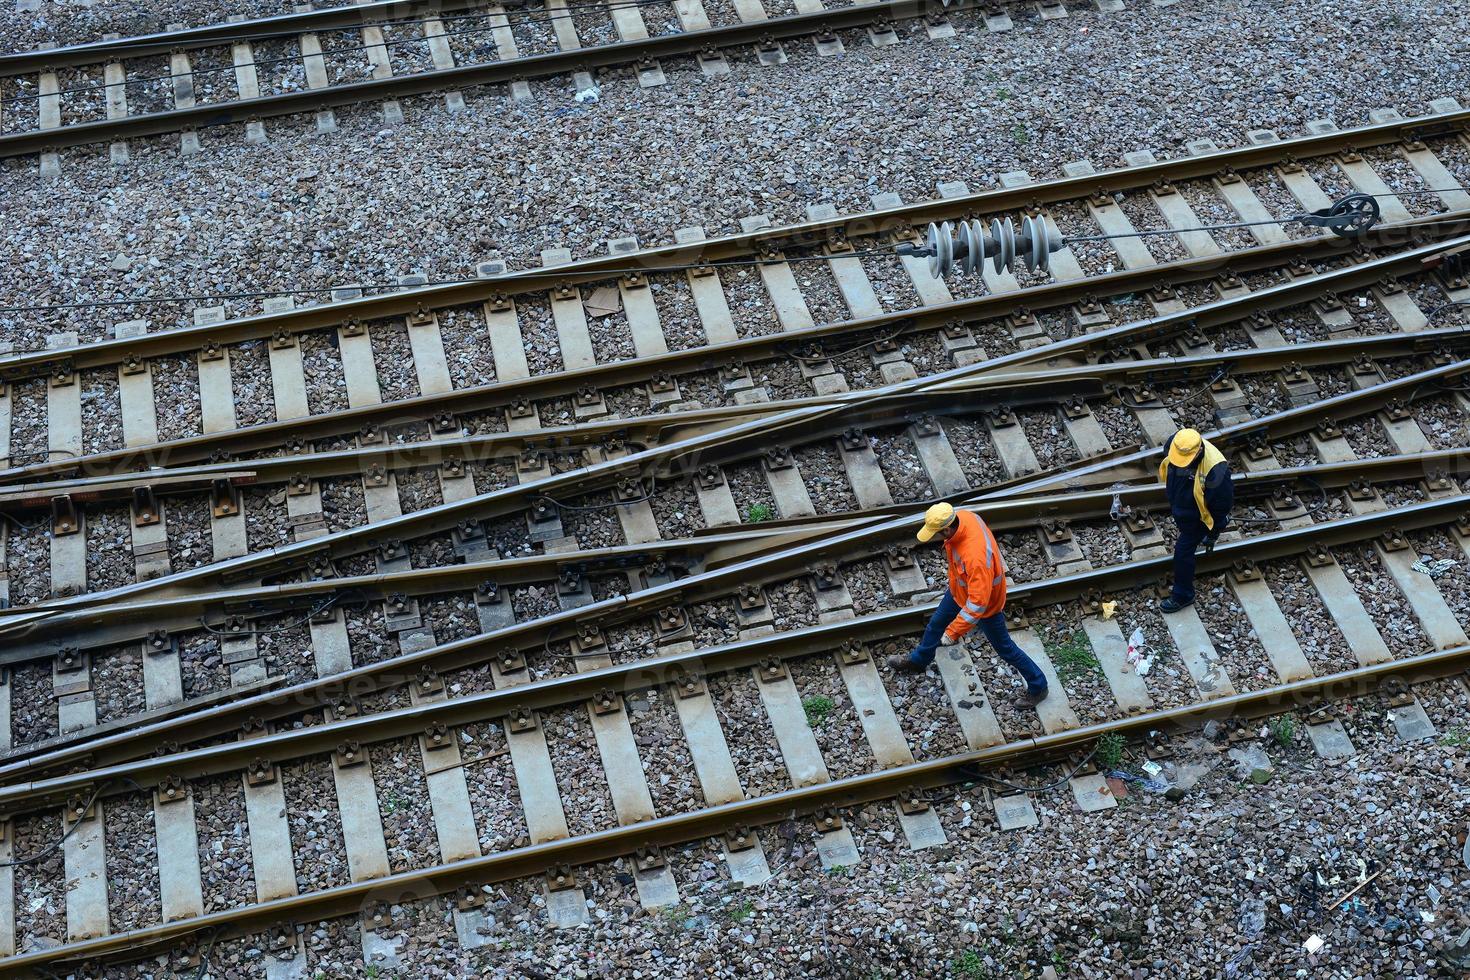 Railway workers in Shanghai photo